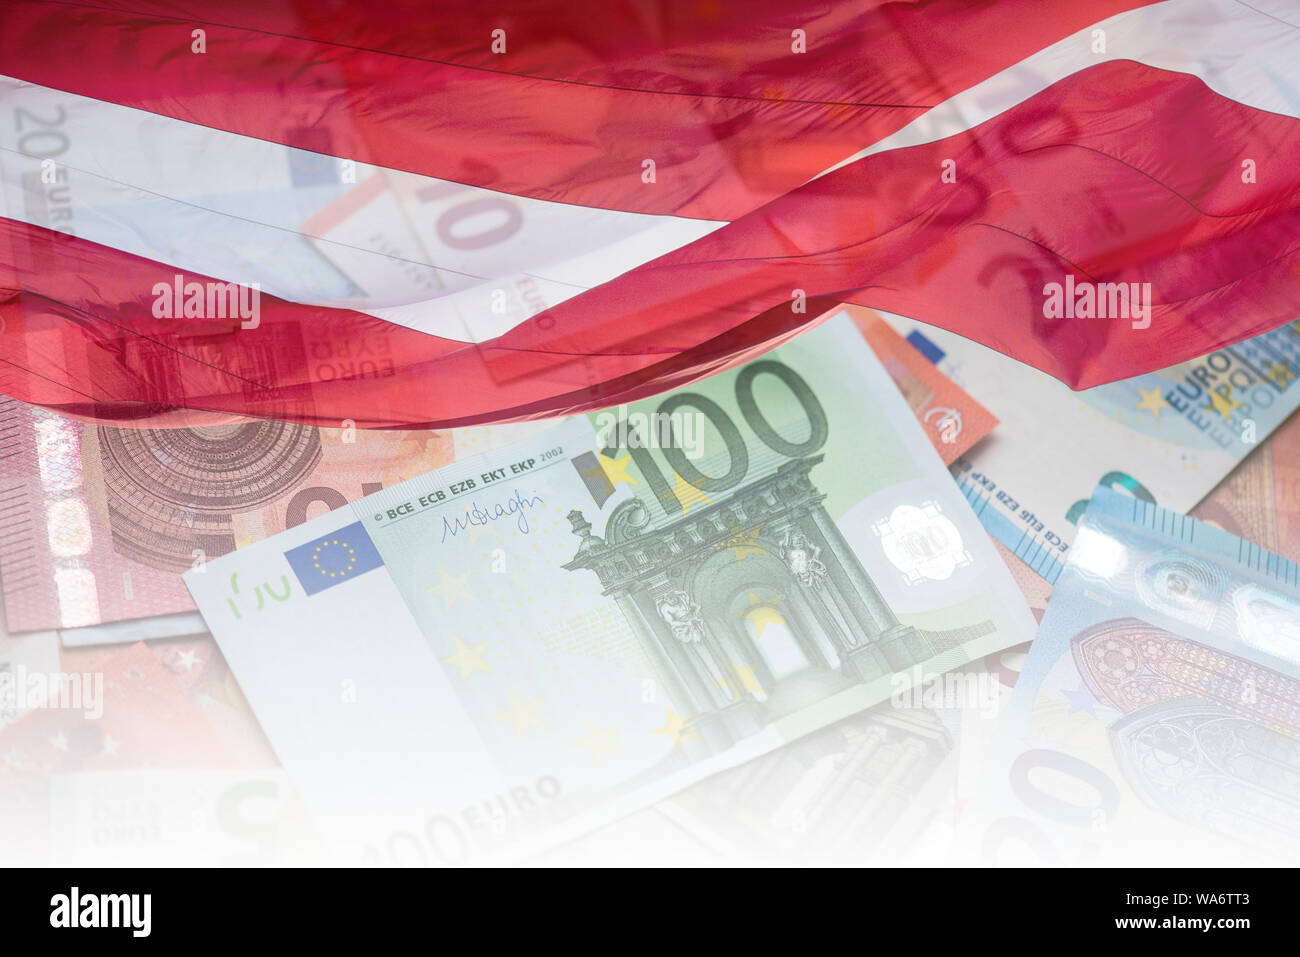 EU Euro banknotes and Latvia Flag, concept Picture, national flag of Latvia and Euro banknote Stock Photo